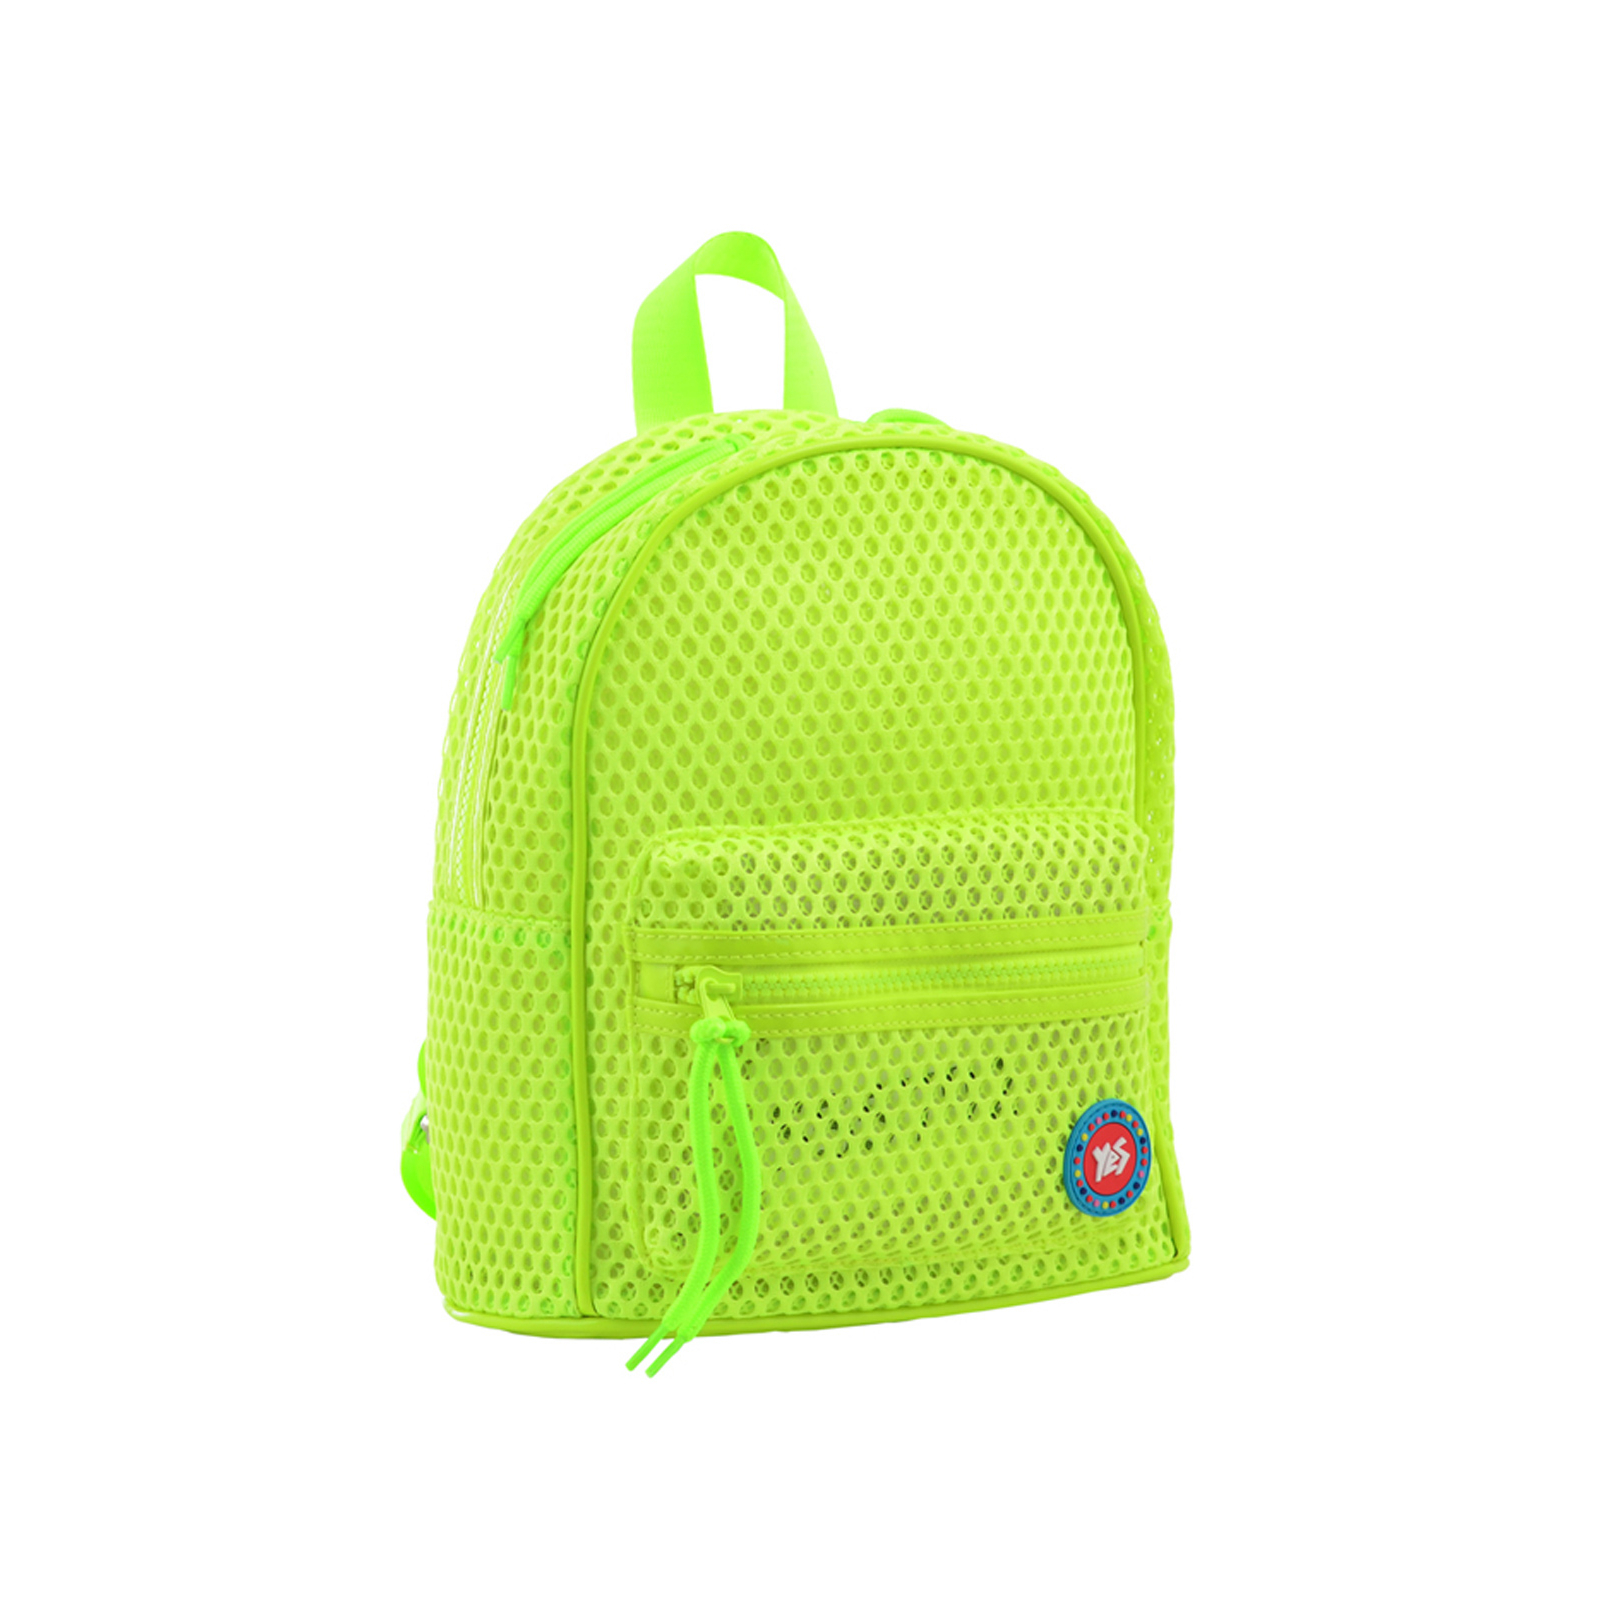 Рюкзак школьный Yes ST-20 Light green (555792)